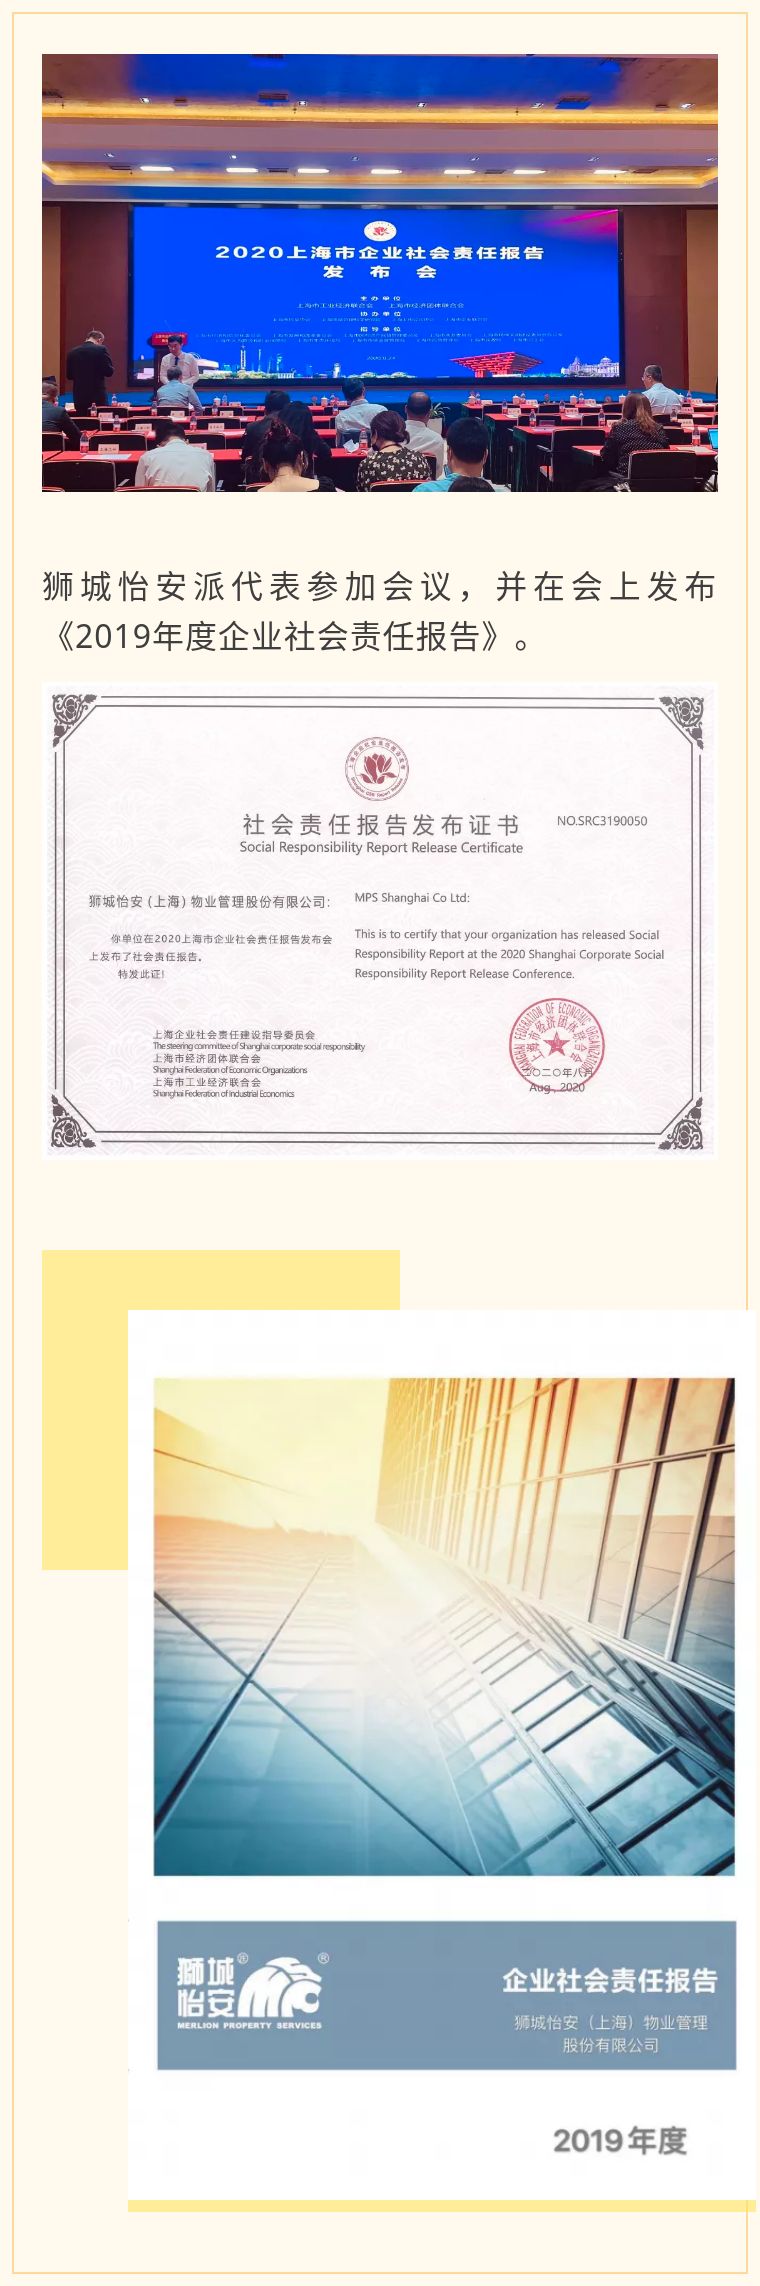 狮城怡安获得企业社会责任报告发布证书